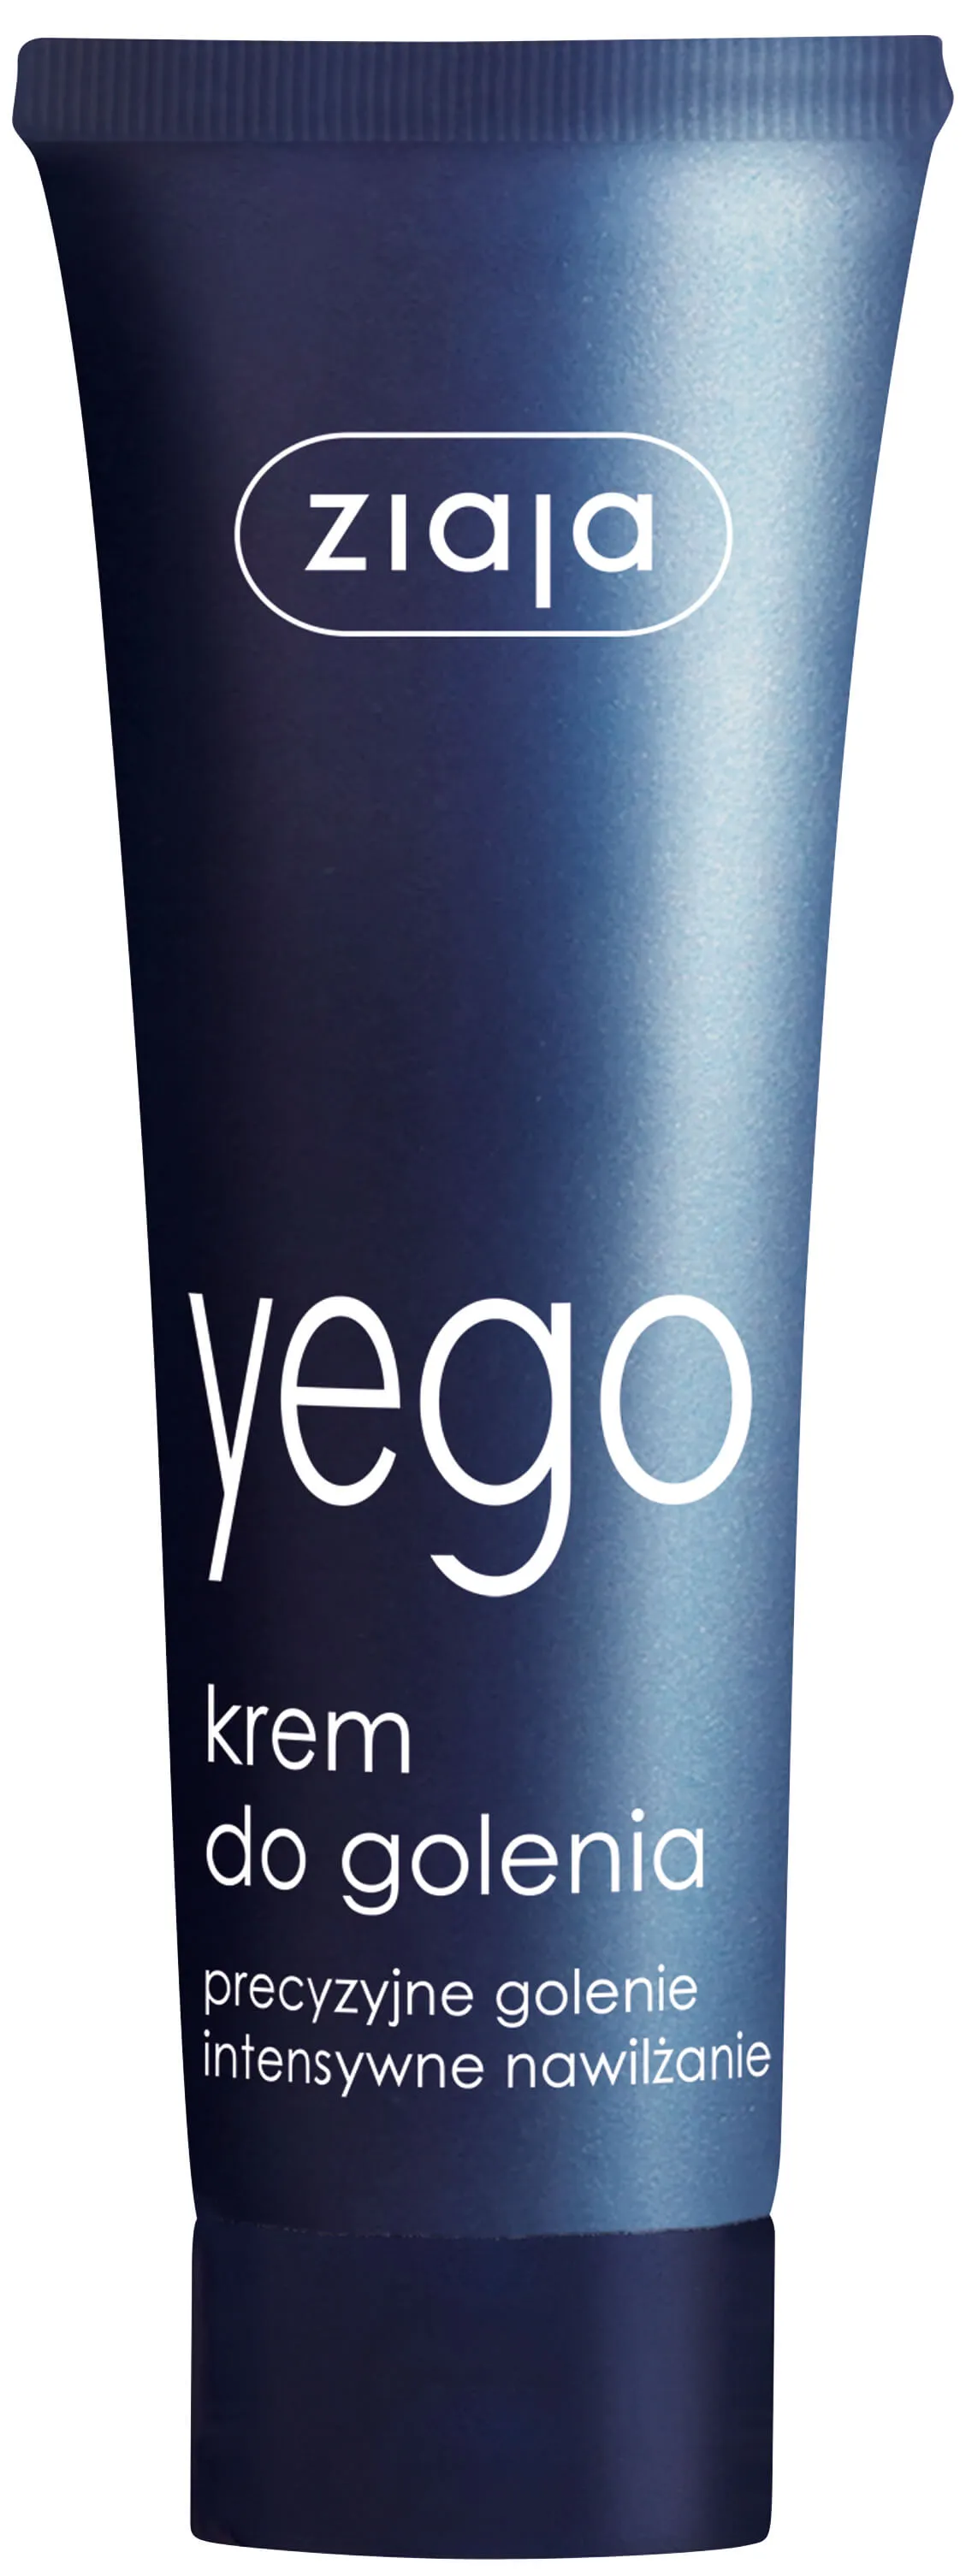 Ziaja Yego, krem do golenia, 65 ml